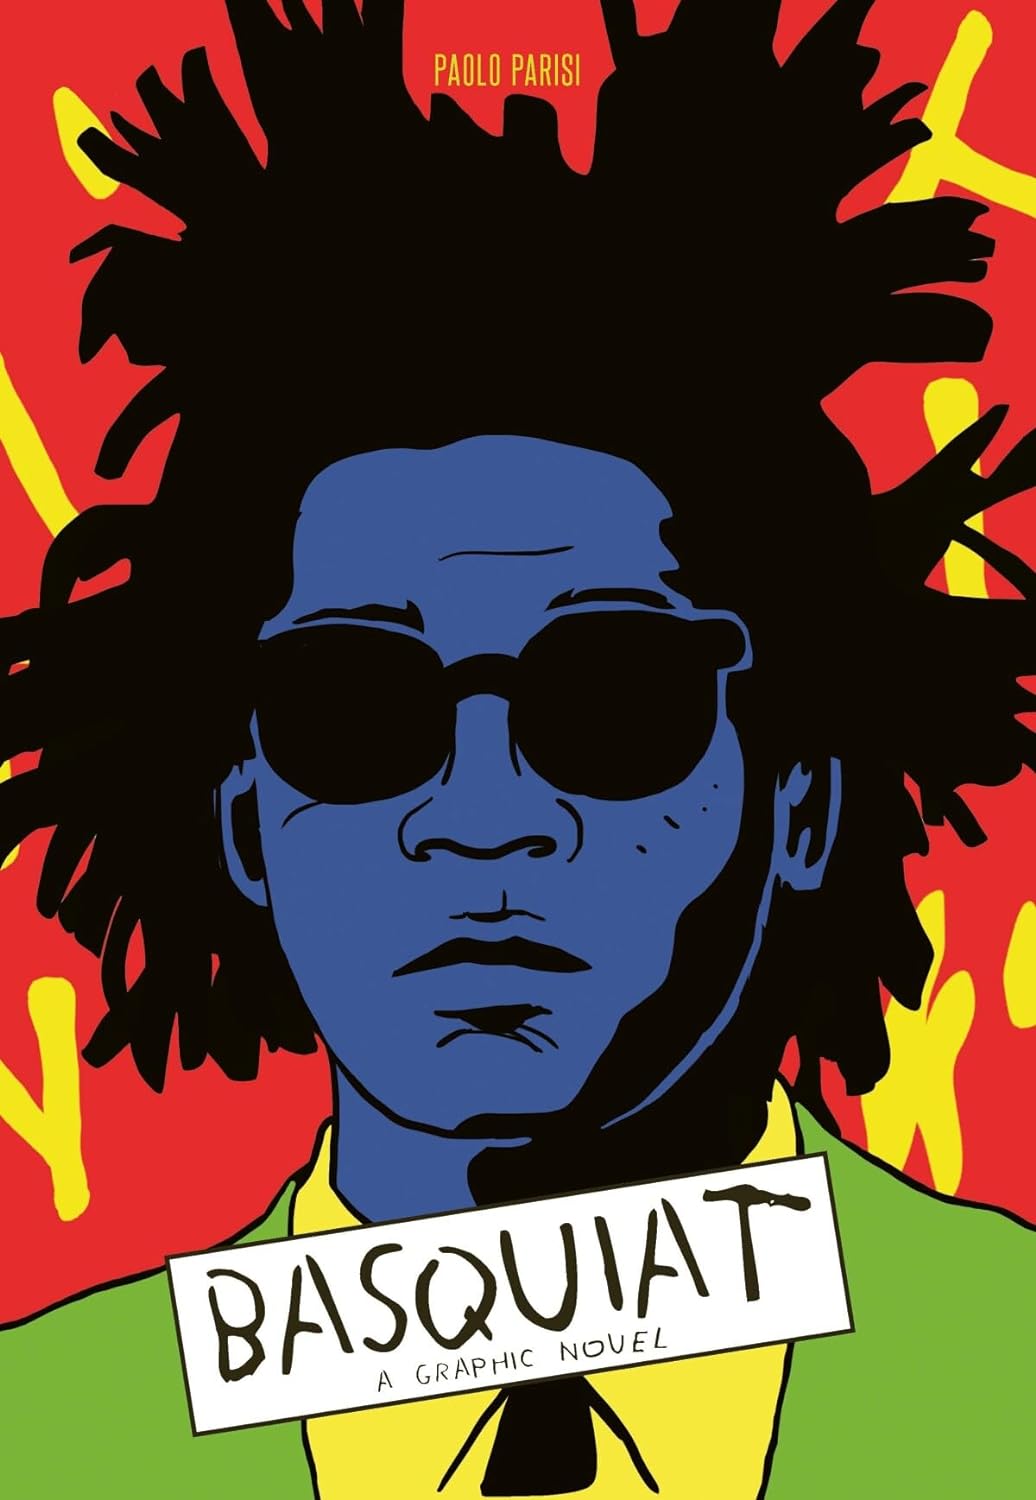 Basquiat: A Graphic Novel (Biography of a Great Artist; Graphic Memoir)